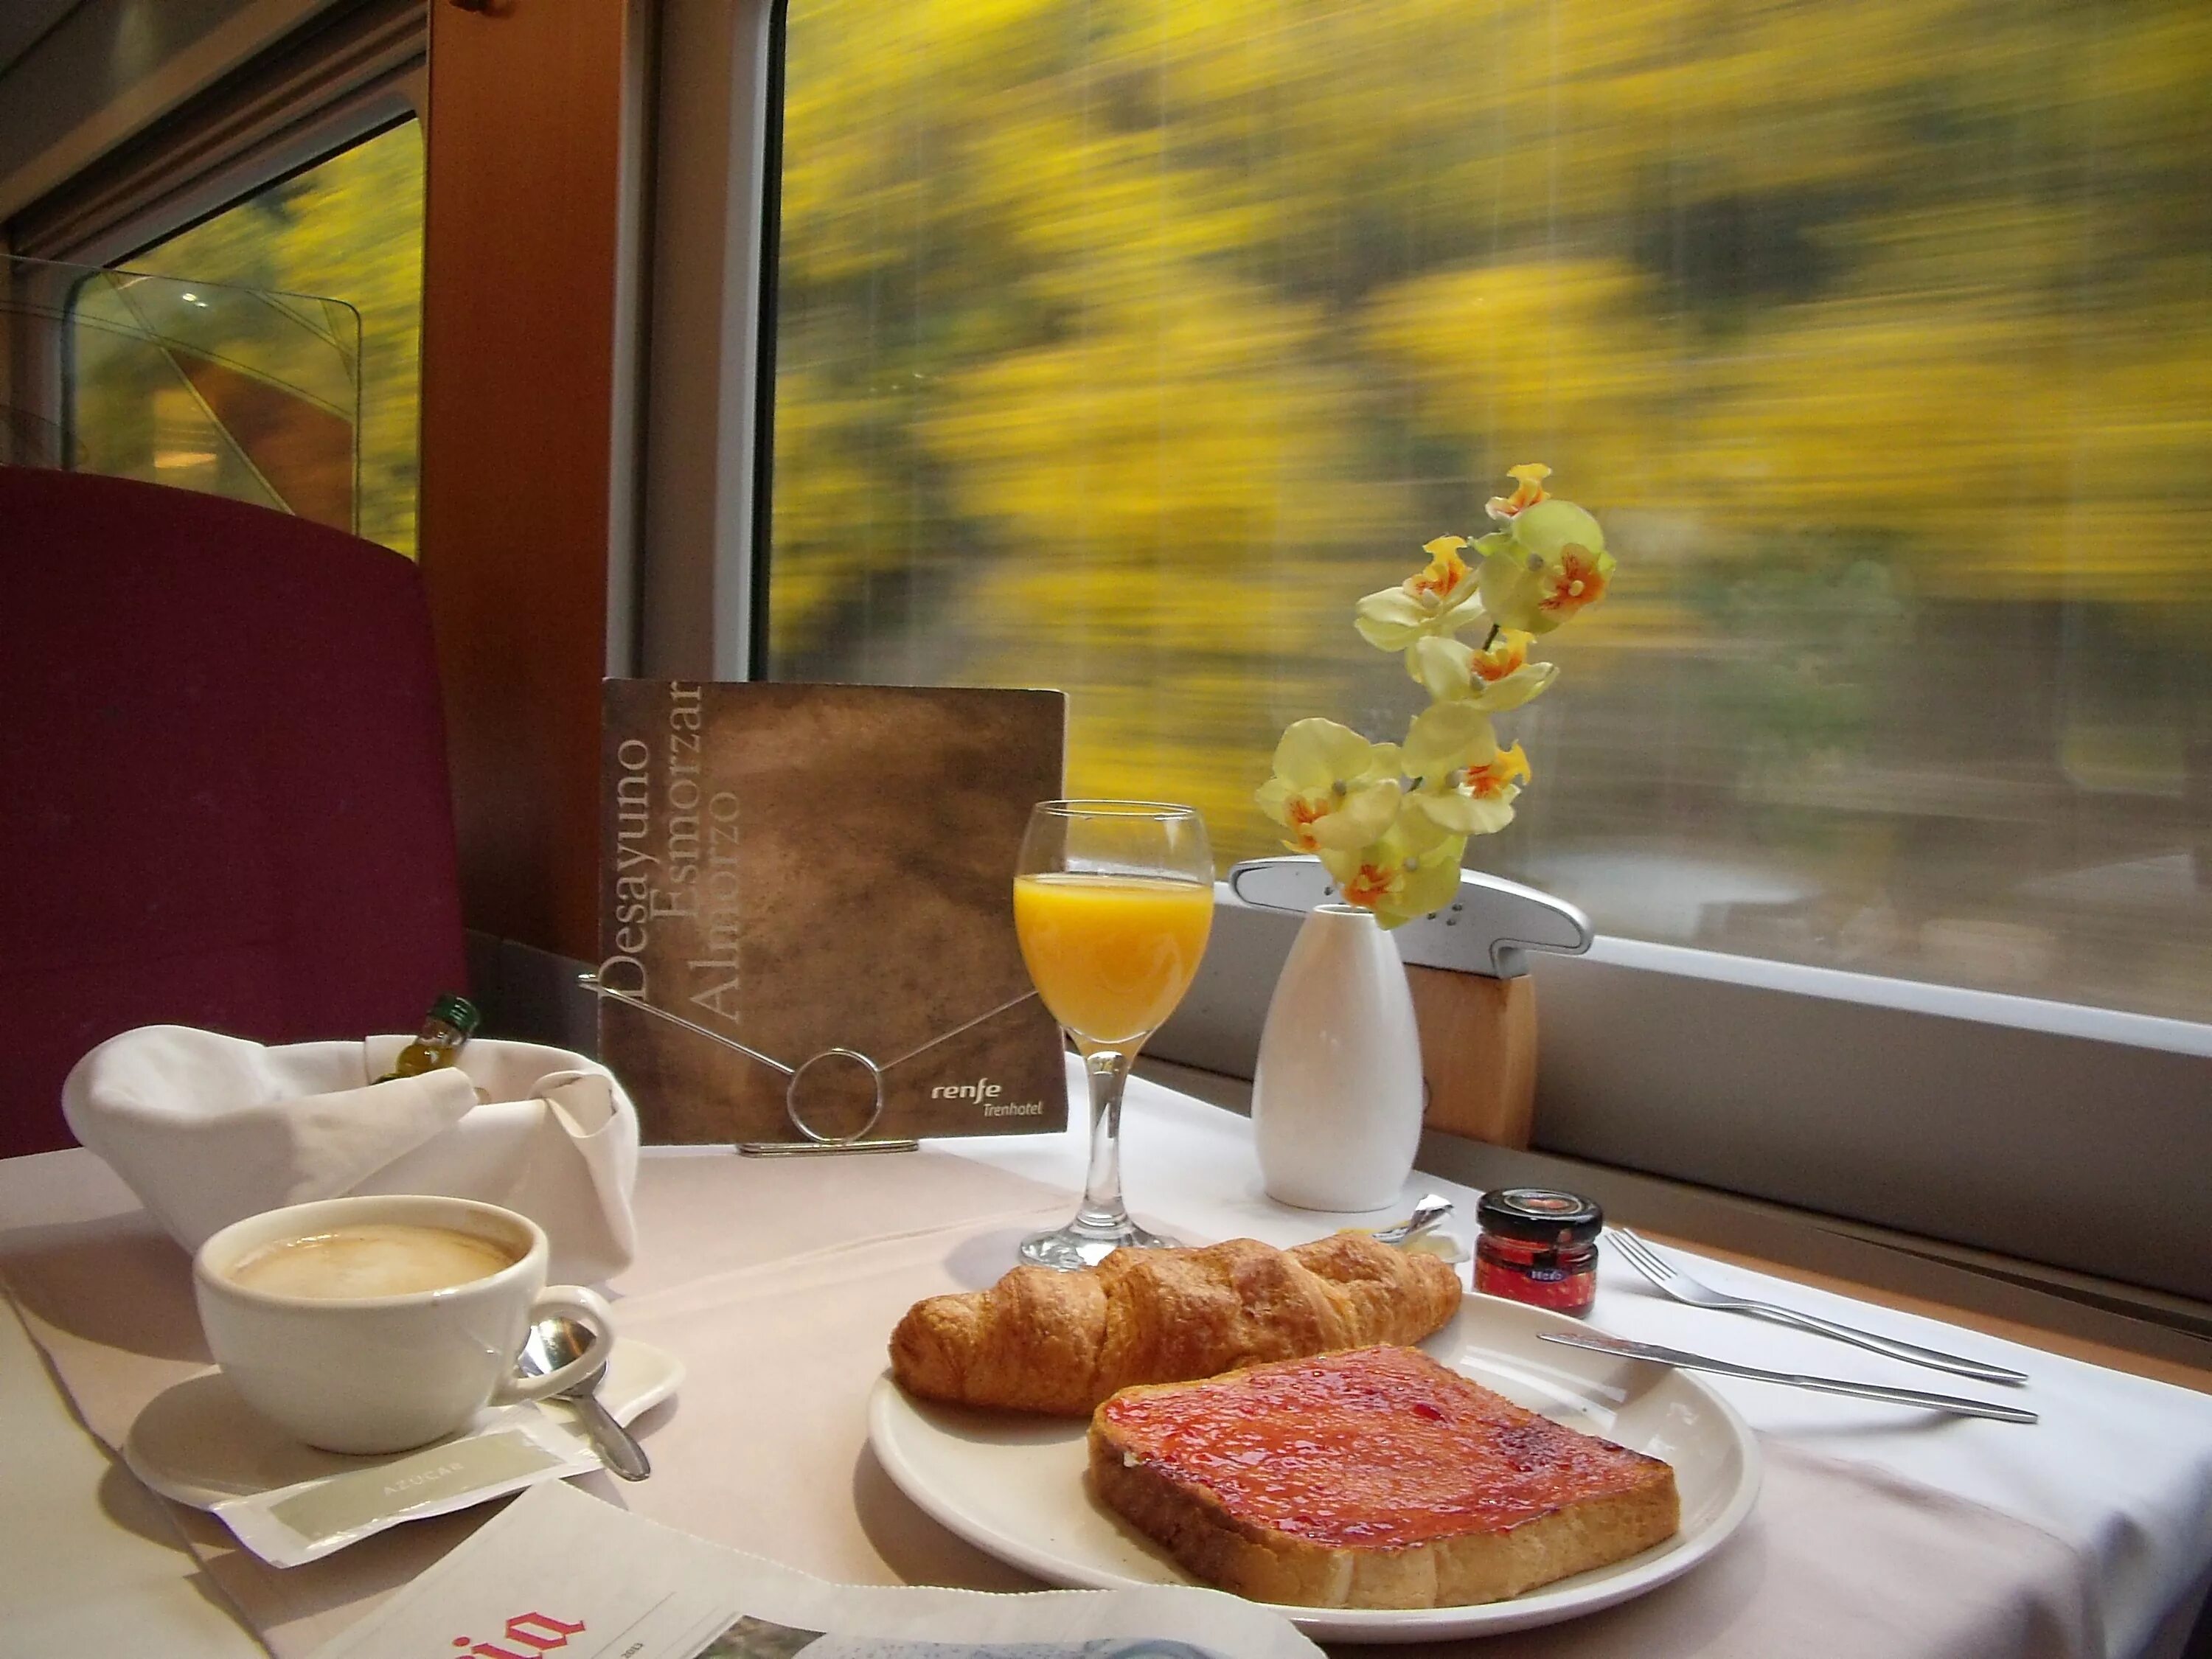 Завтрак в поезде. Доброе утро в поезде. С добрым утром в поезде. Доброе утро завтрак. Включи станцию на утро